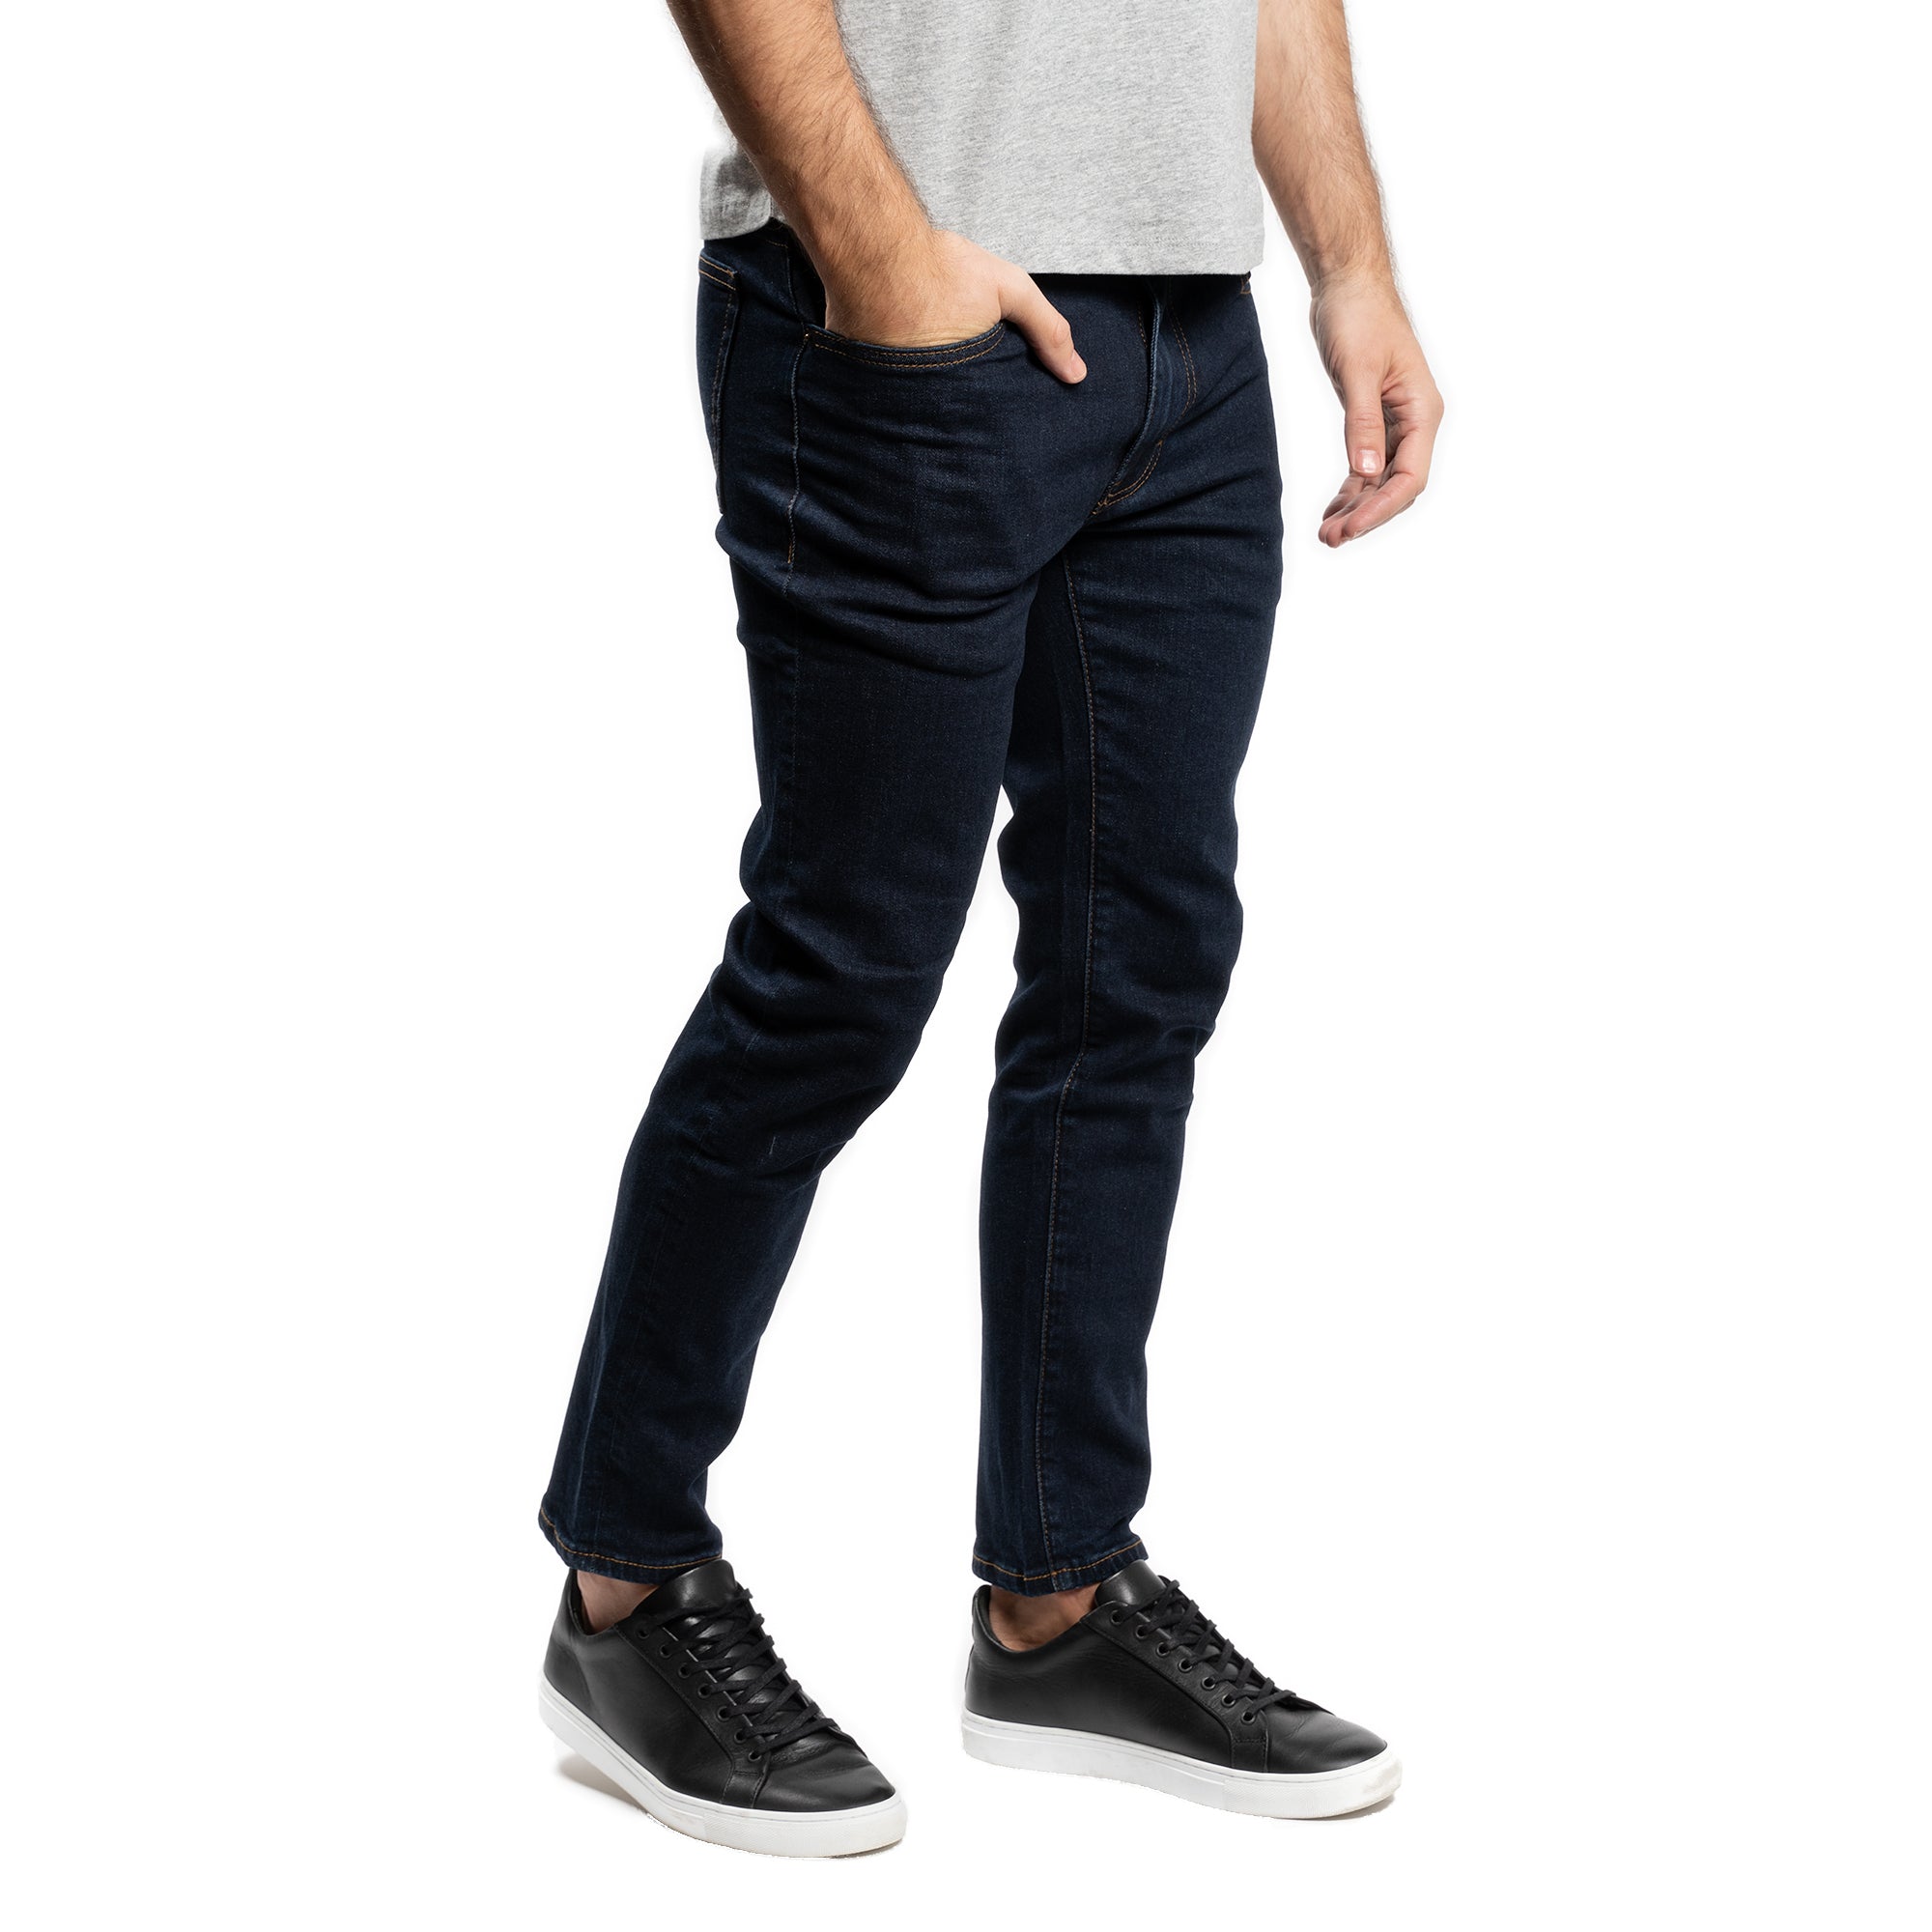 Essentials Men's Straight-Fit Stretch Jeans Black 30W x 28L